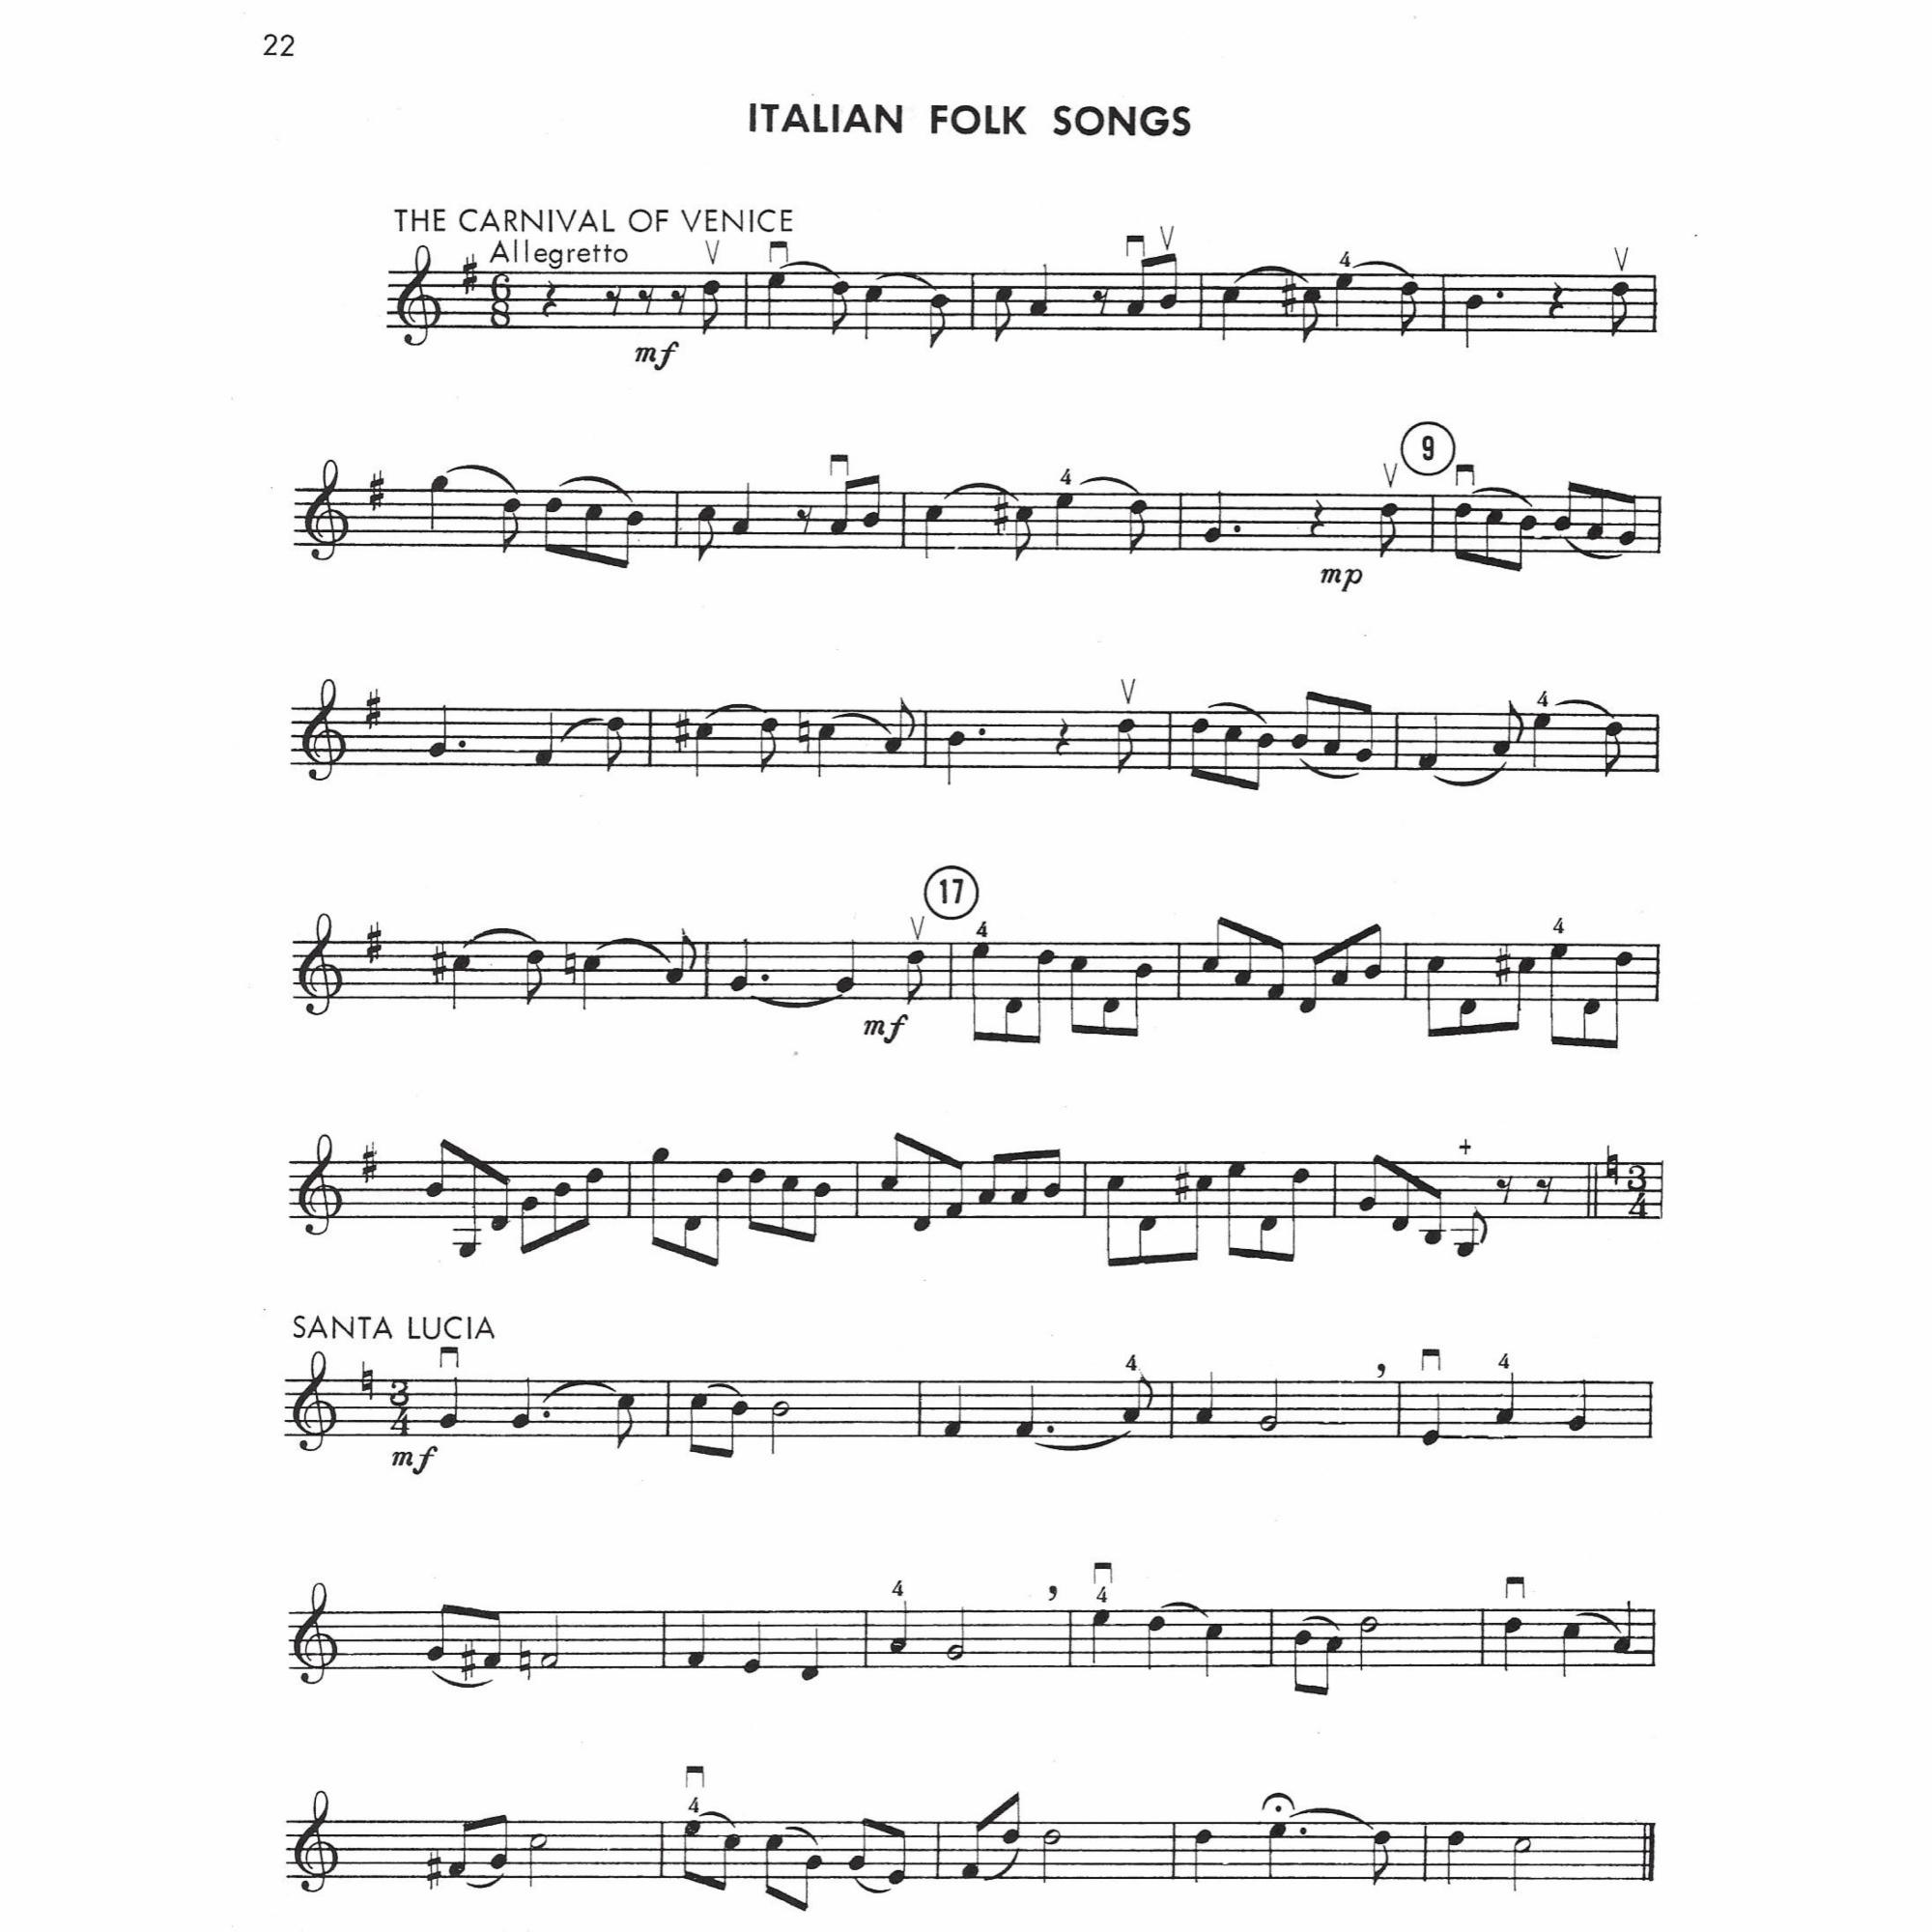 Sample: Violin (Pg. 22)